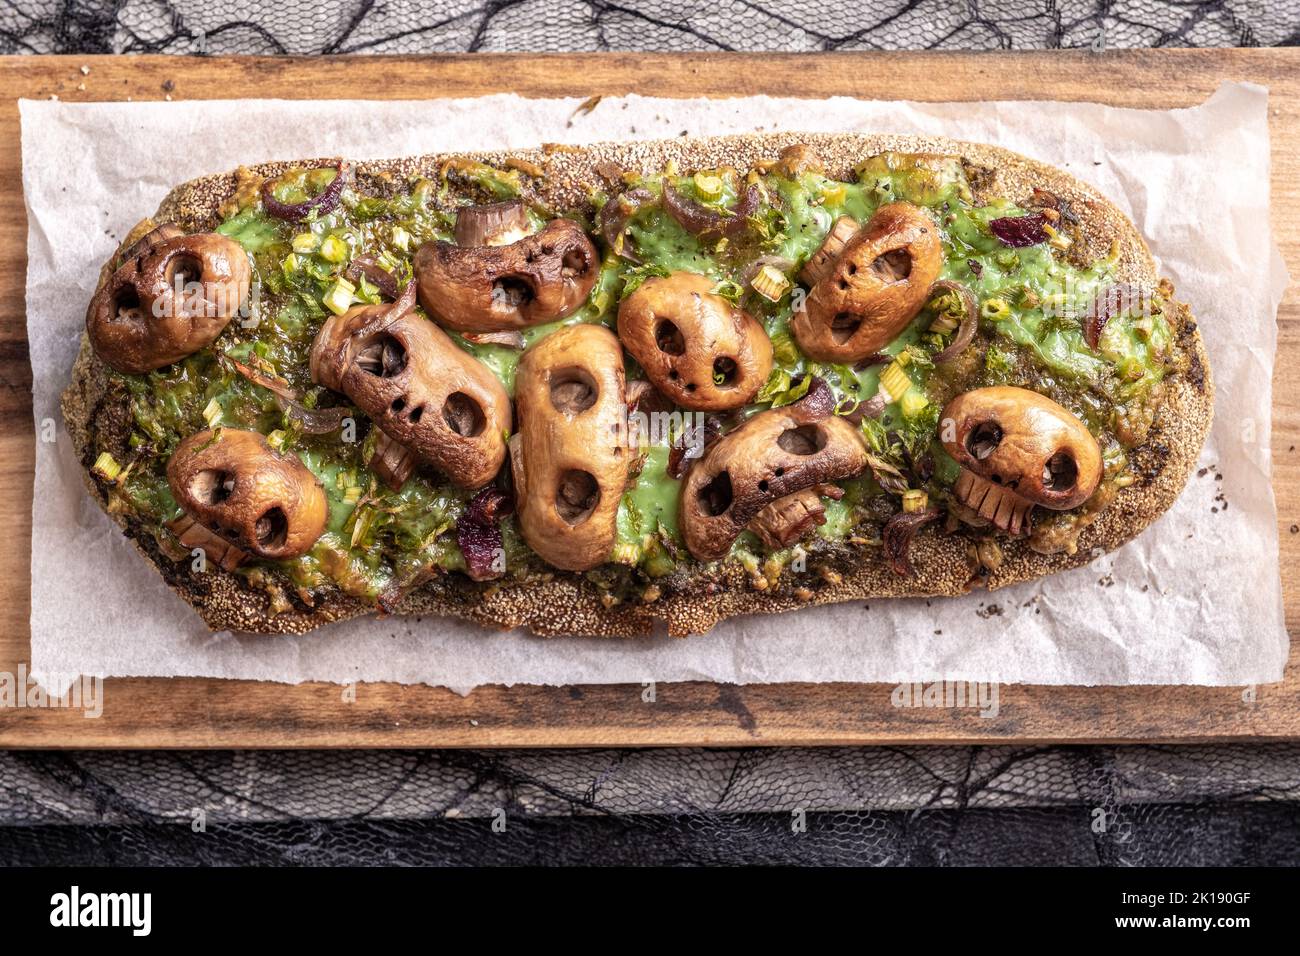 Halloween spooky pizza bread with skull-shaped mushroom. Stock Photo